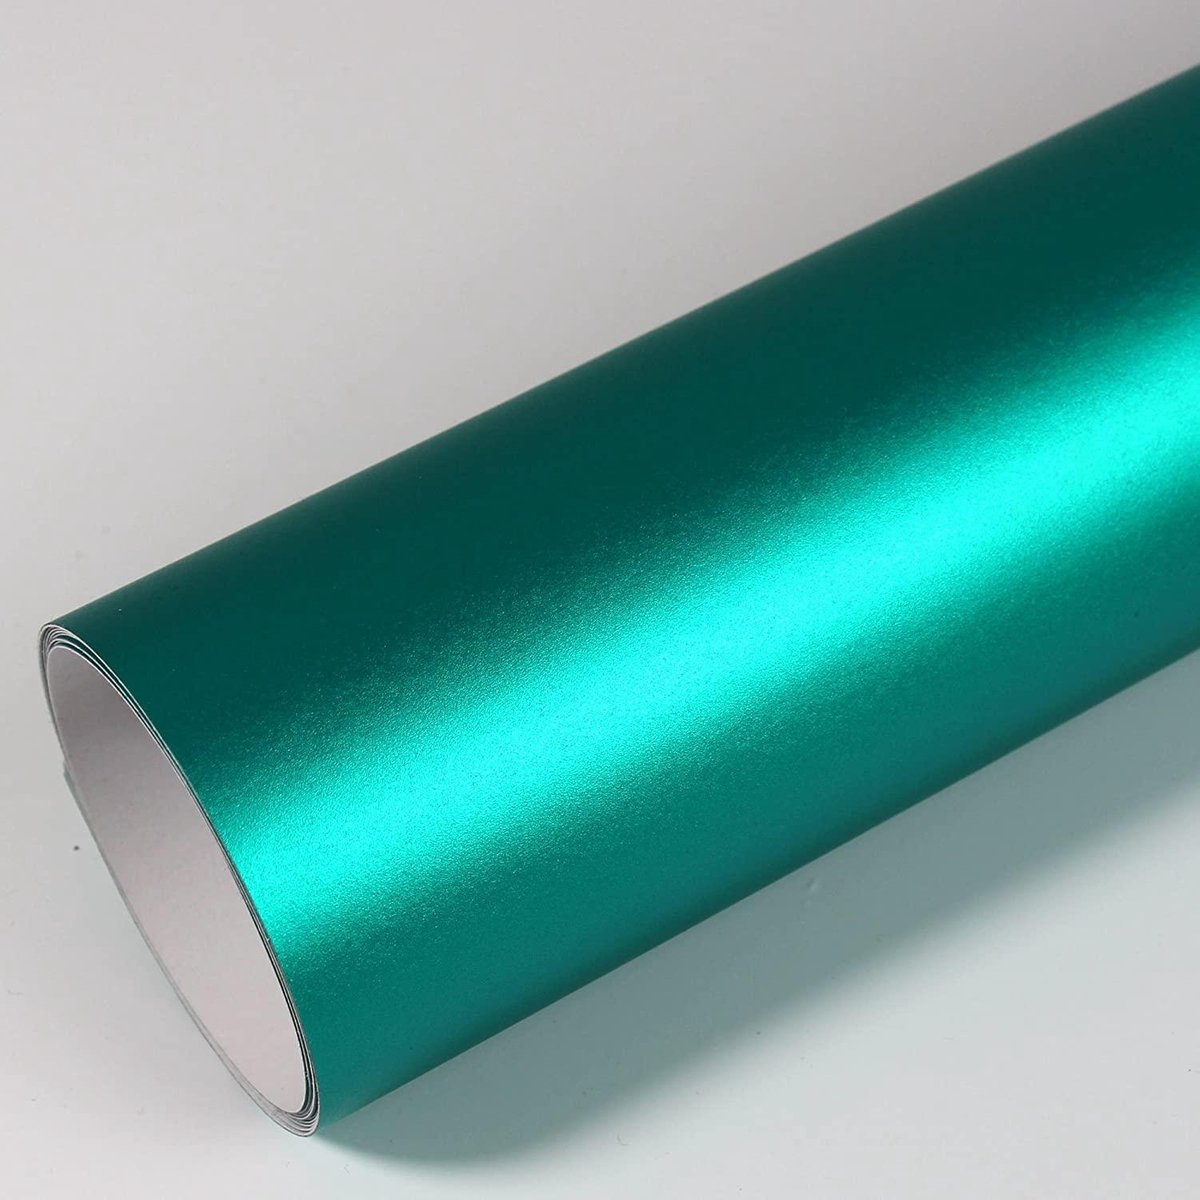 Vinyl wrap folie voor auto of keuken, 5m x 1.5m, mat chroom blauw-groen  autofolie